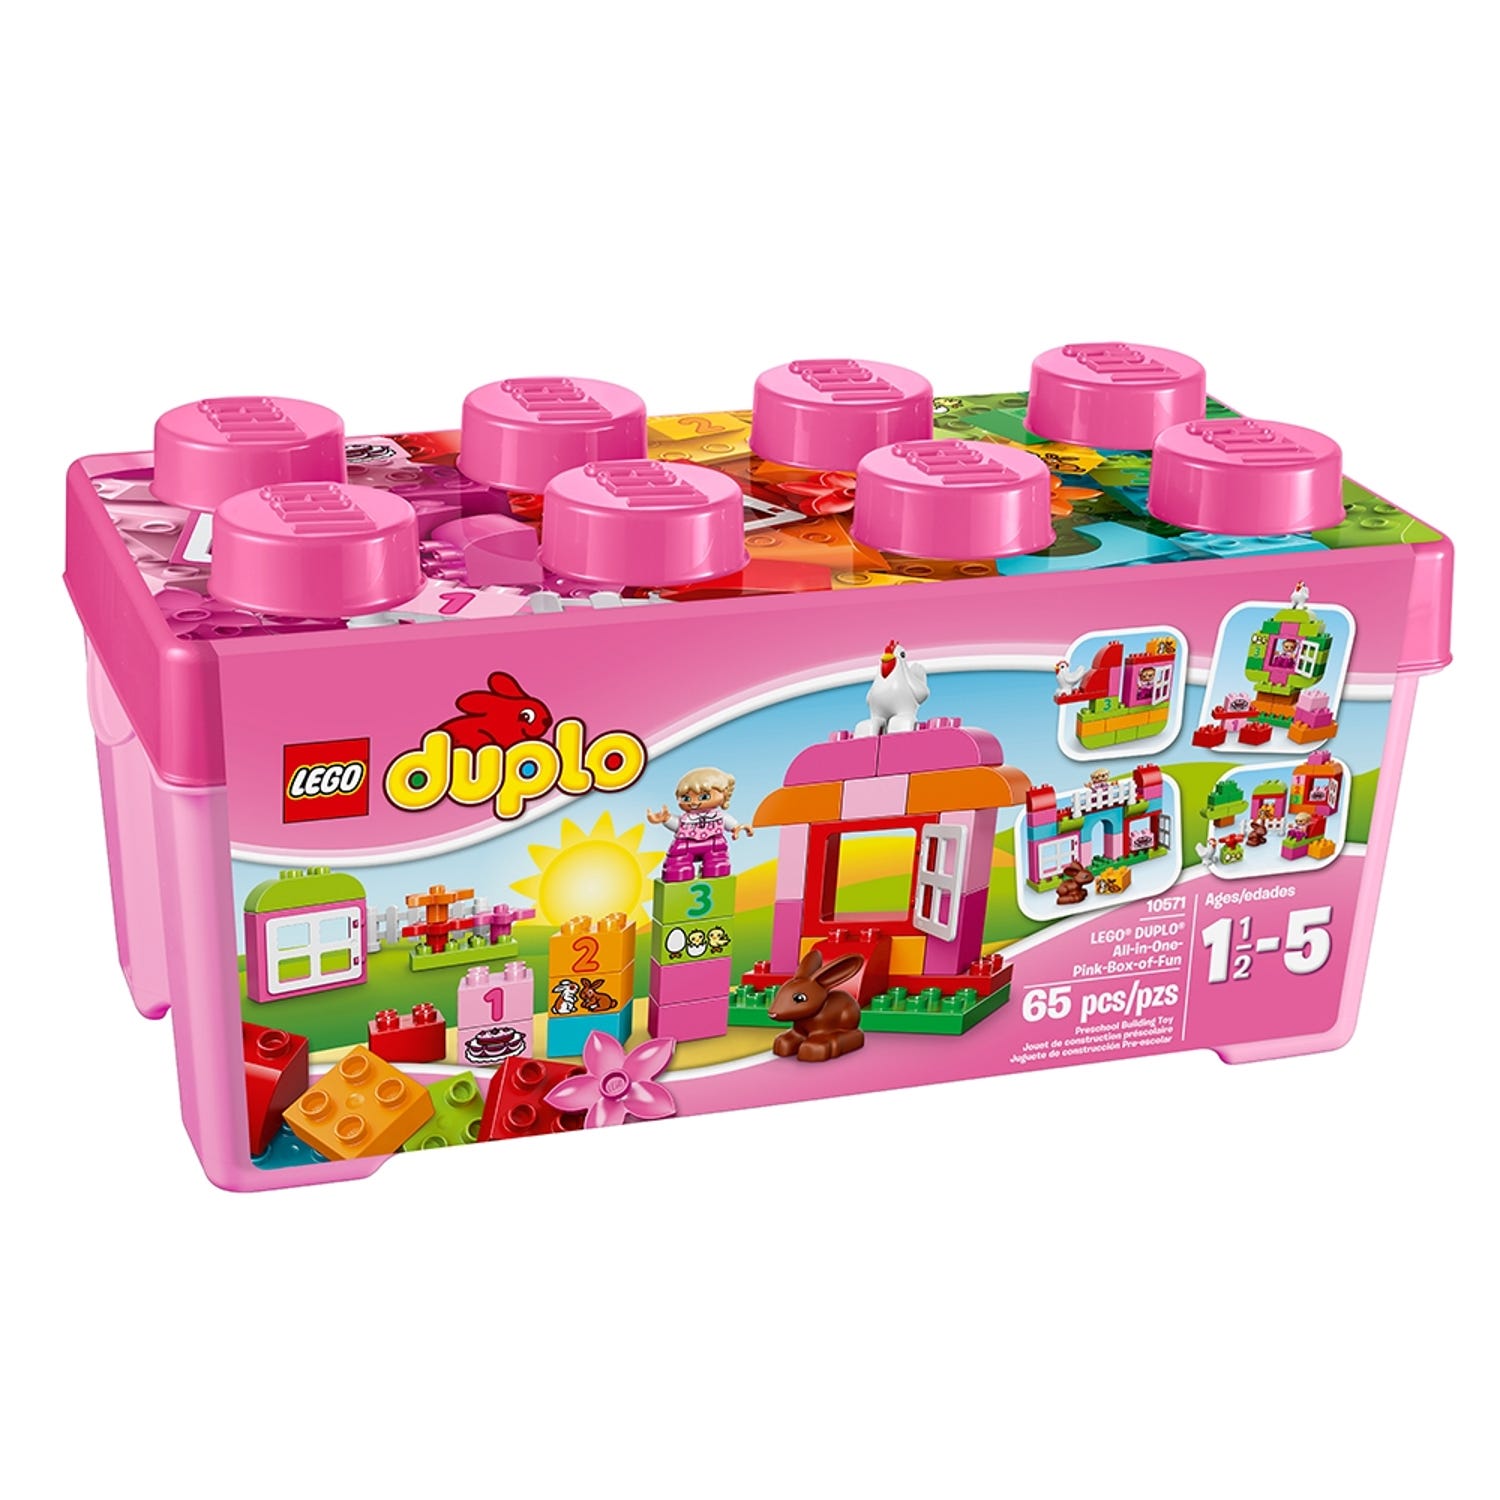 Goodwill juni melk wit LEGO® DUPLO® alles-in-één roze doos 10571 | DUPLO® | Officiële LEGO® winkel  NL